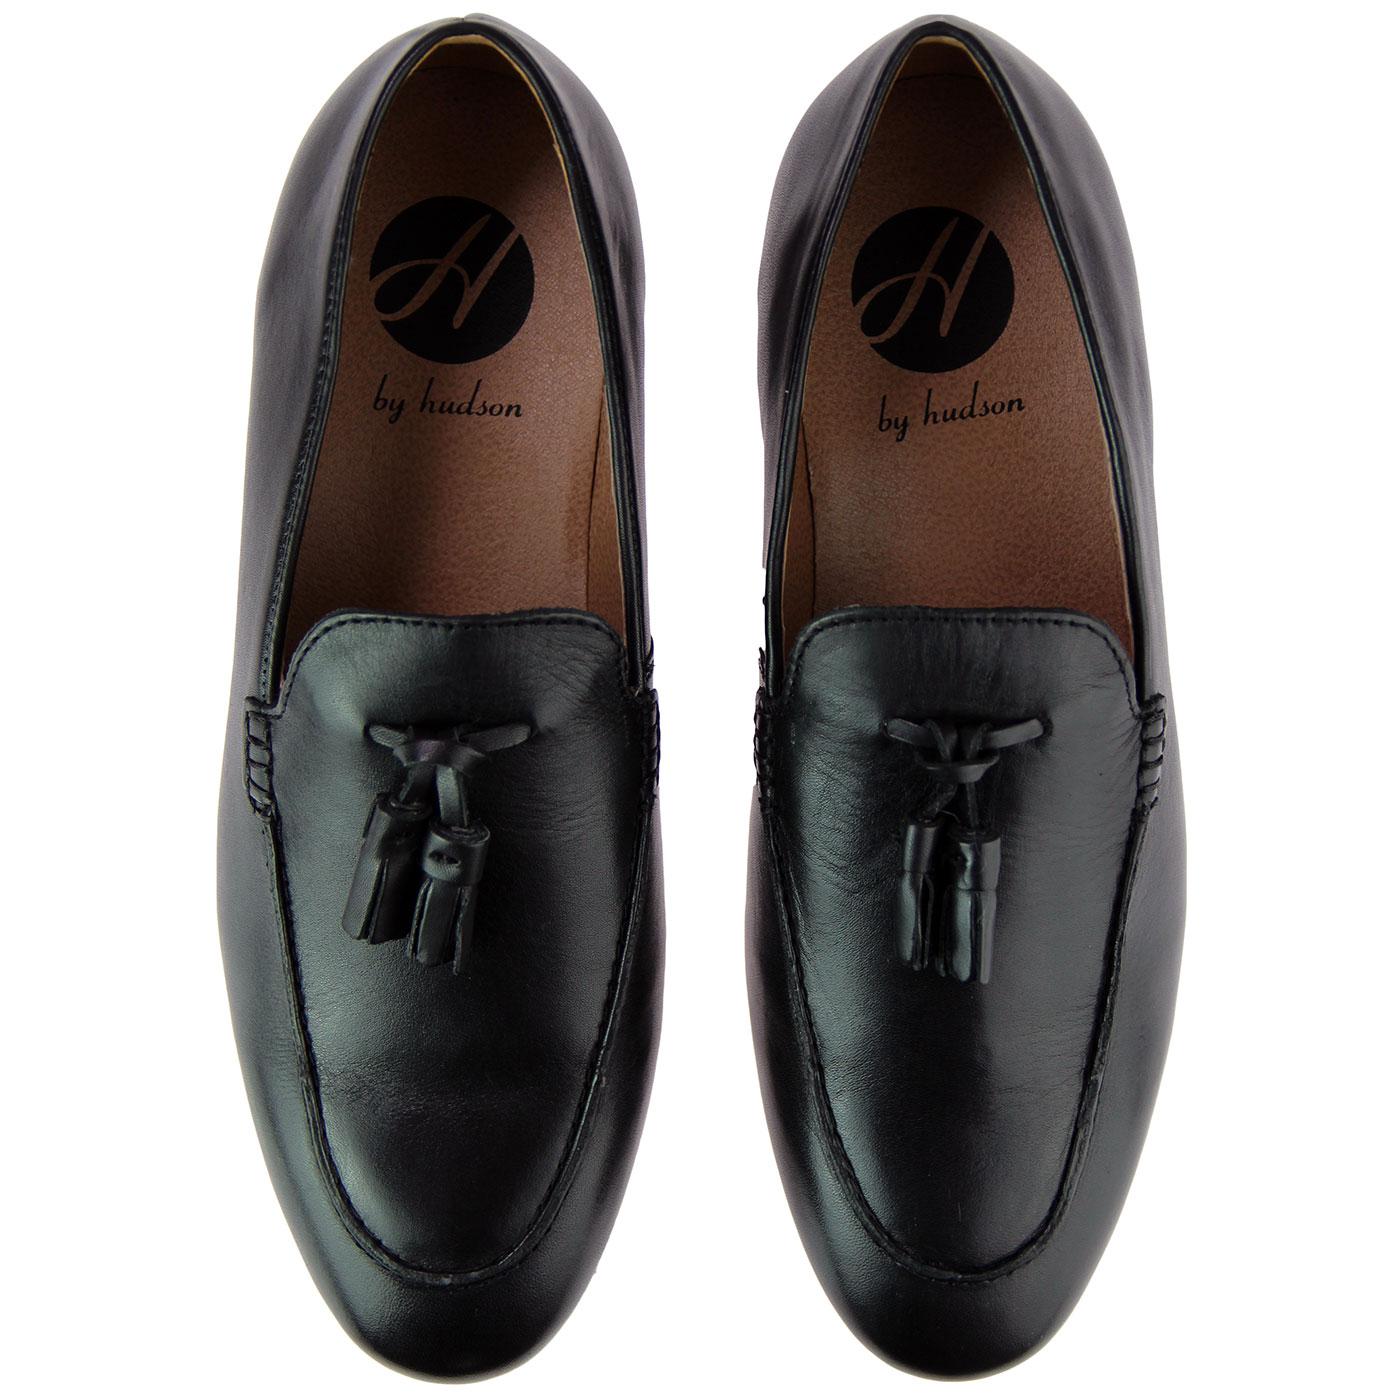 HUDSON Bolton 1960s Mod Leather Tassel Loafer Shoes Black